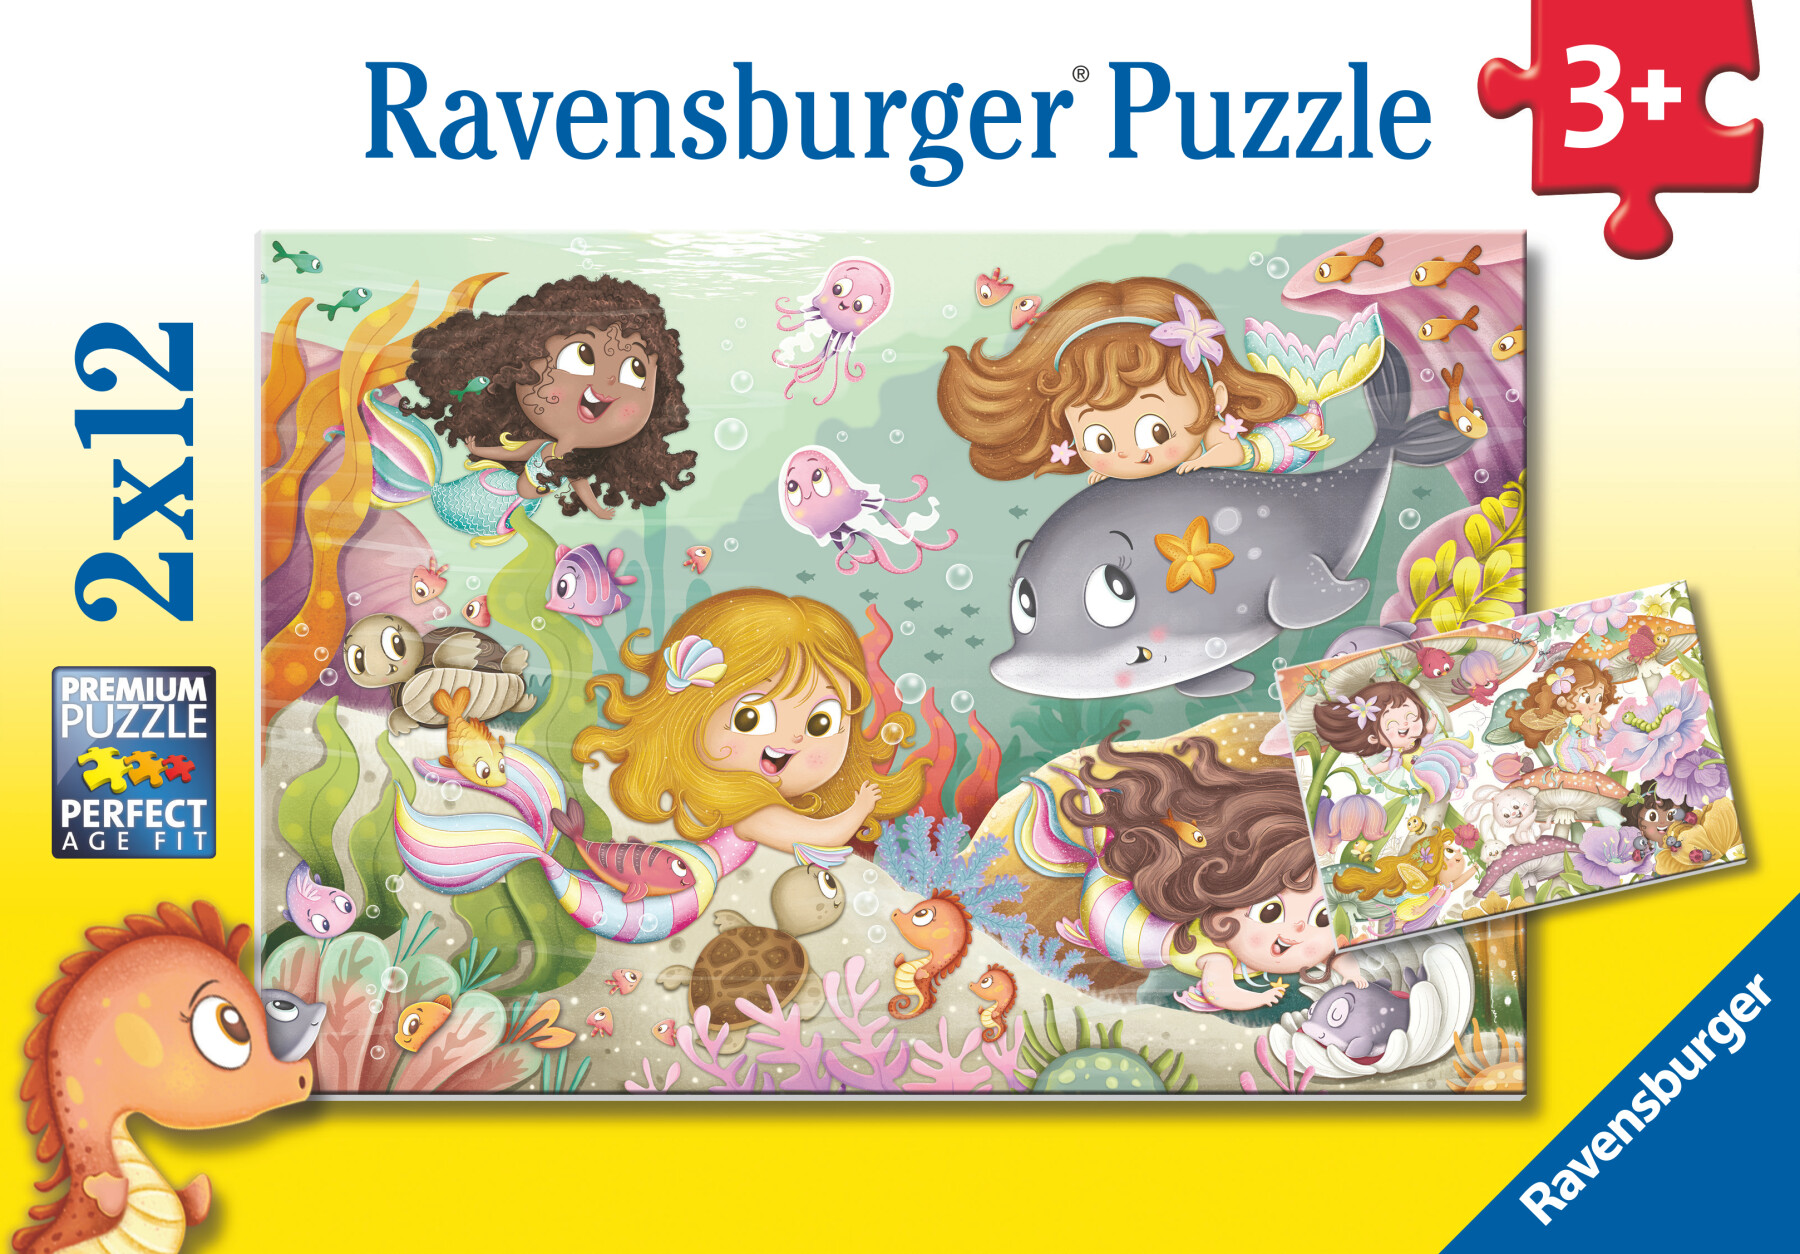 Ravensburger - puzzle illustrato fatine e sirene, collezione 2x12, 2 puzzle da 12 pezzi, età raccomandata 3+ anni - RAVENSBURGER